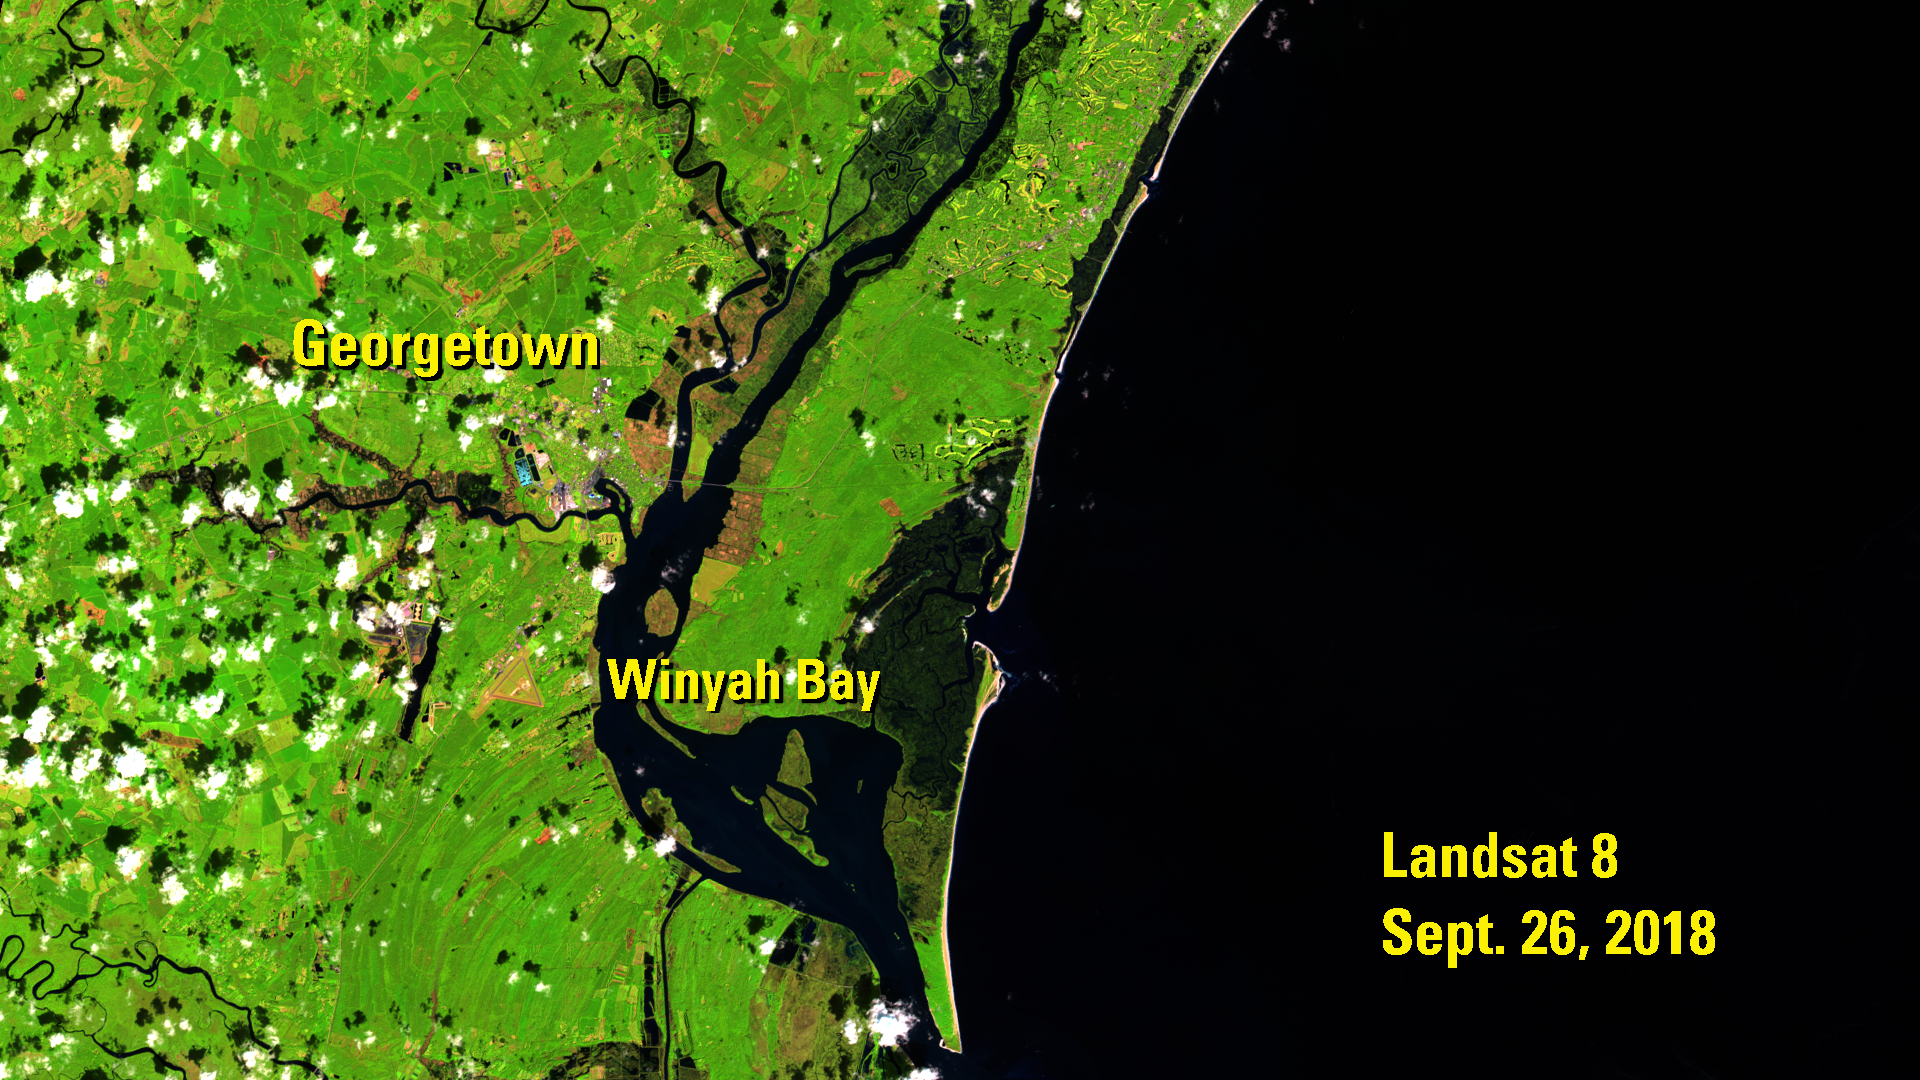 Landsat 8 over Georgetown, S.C. after Hurricane Florence